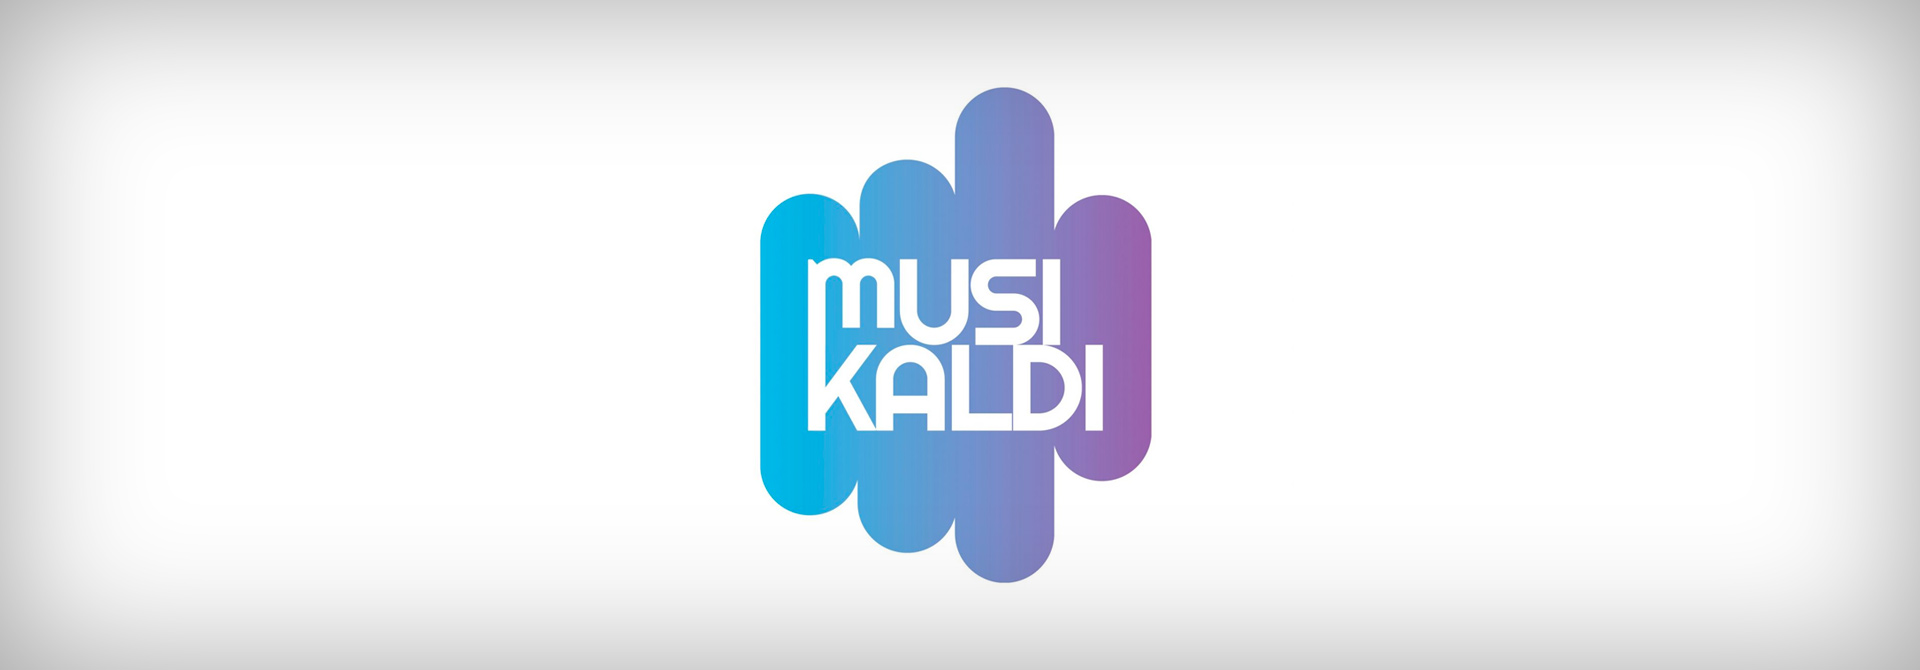 Musikaldi 2019